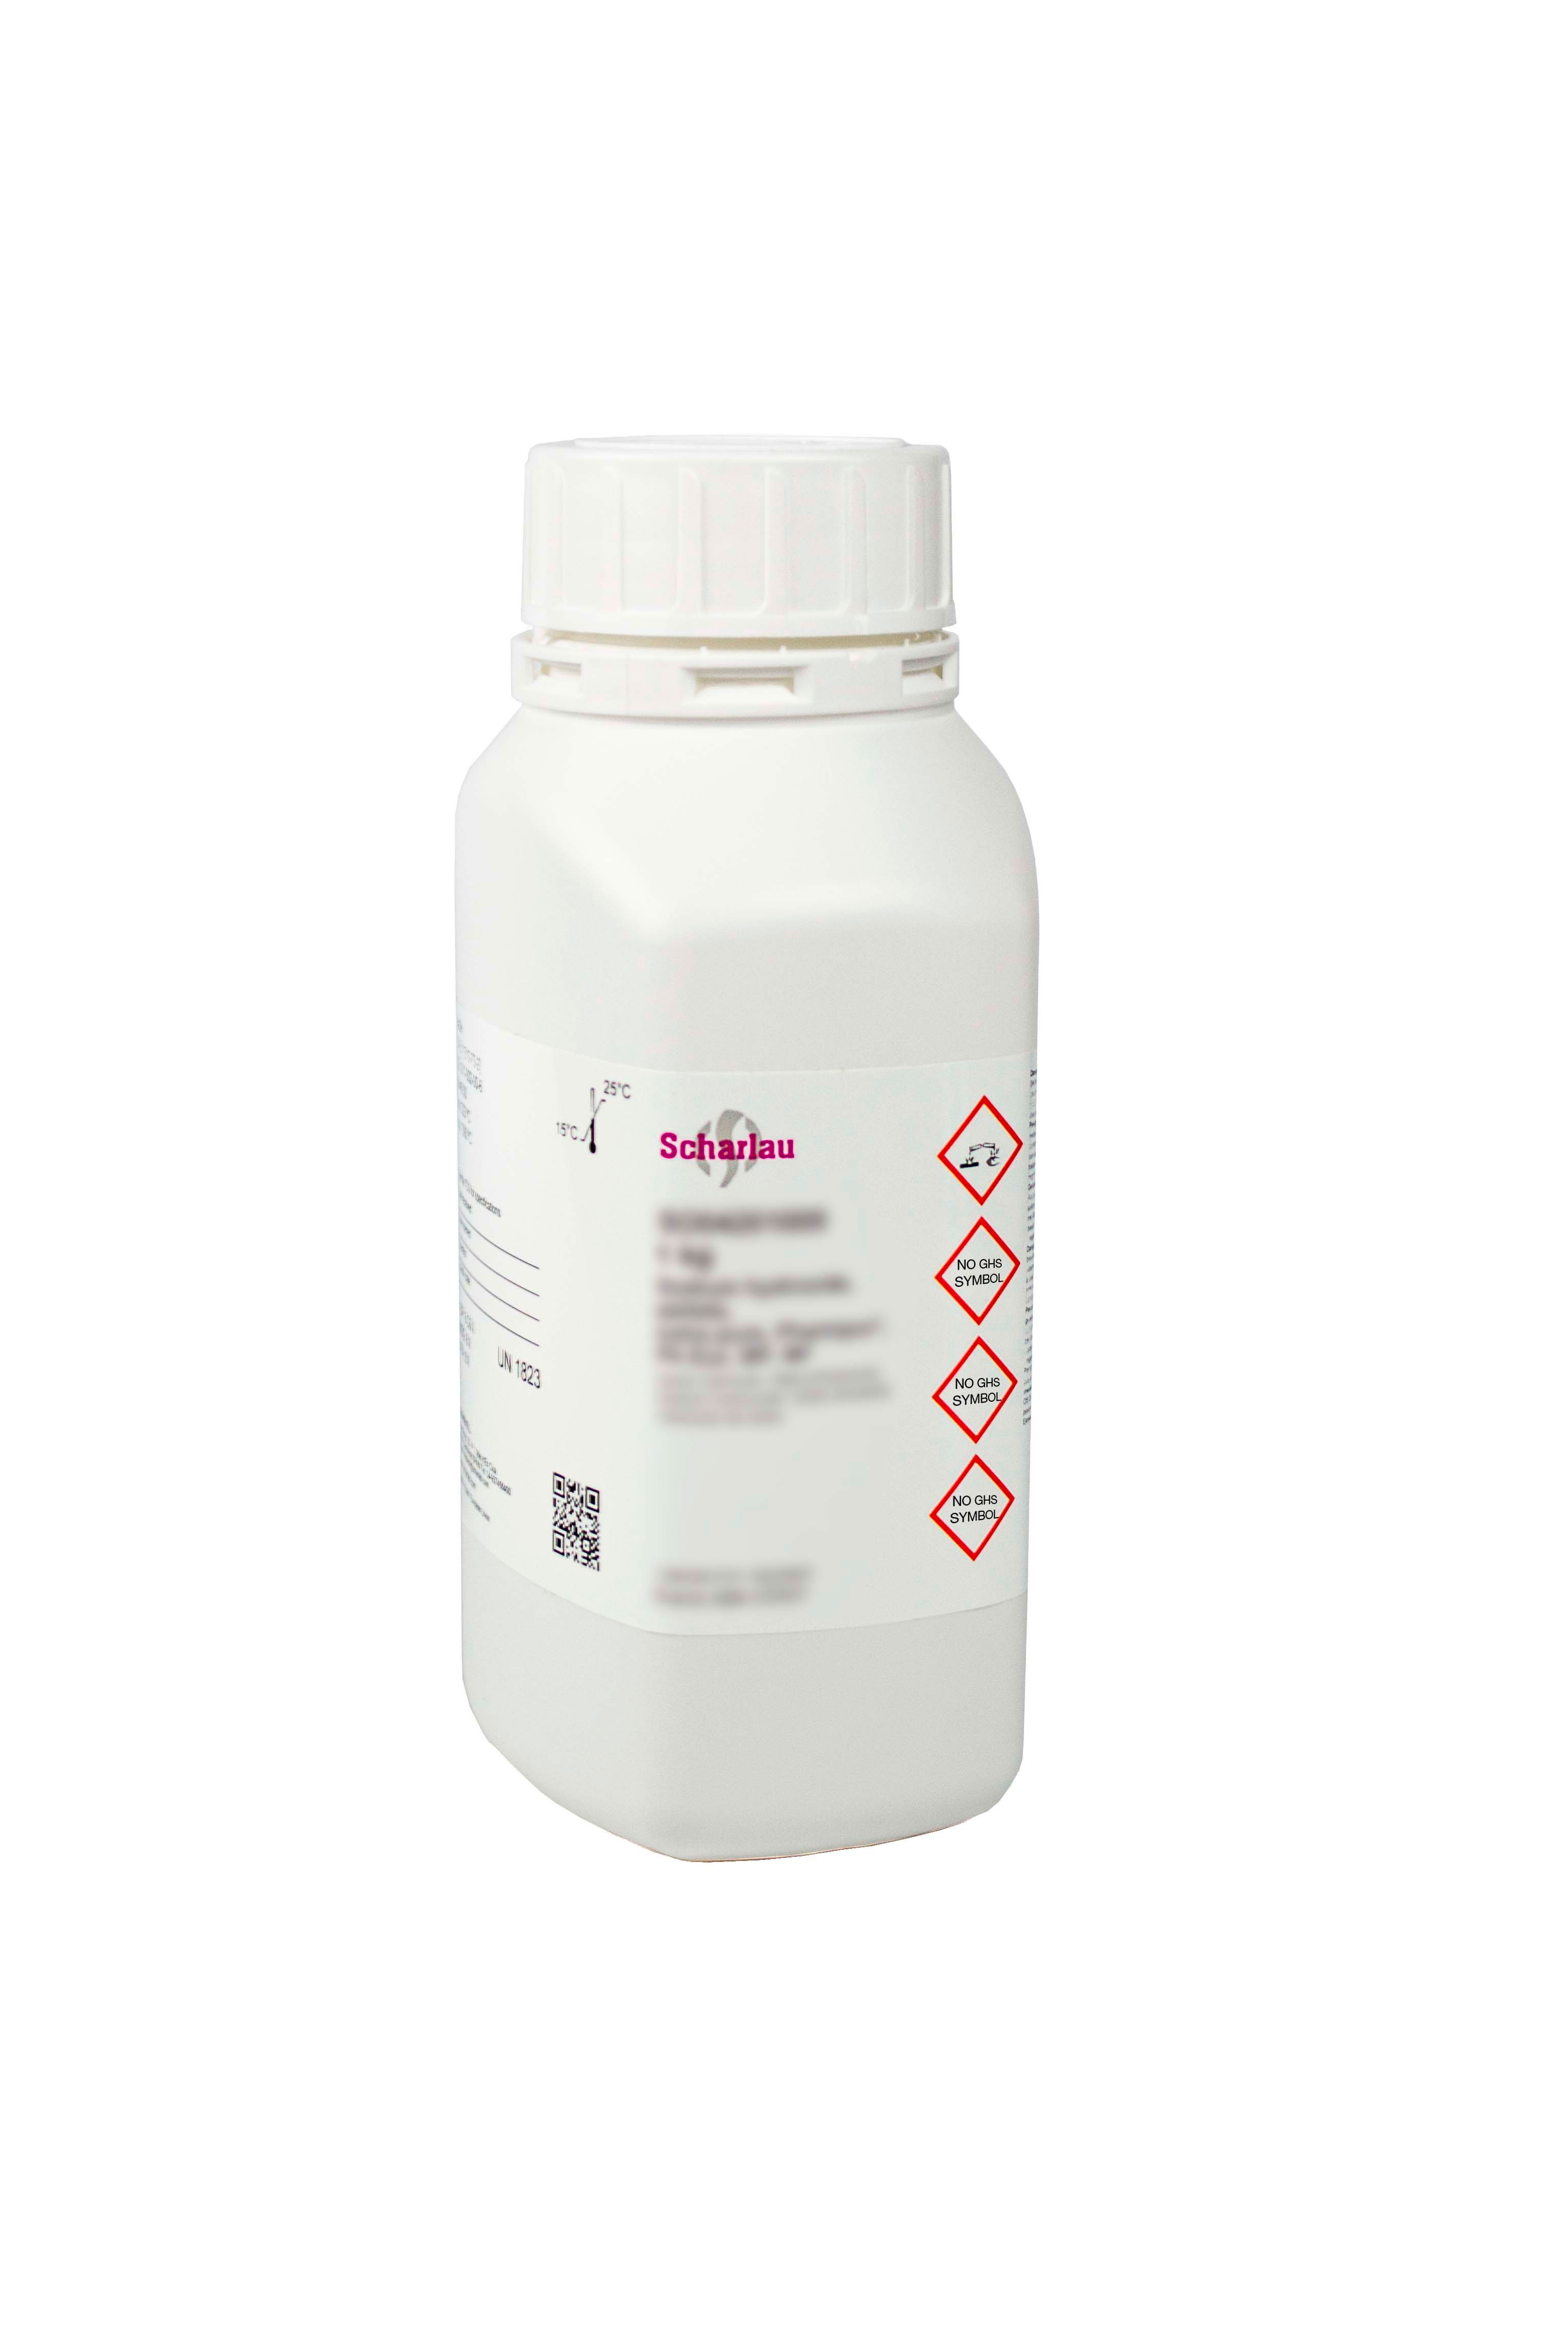 di-Sodium tetraborate decahydrate, Pharmpur®, Ph Eur, BP, NF